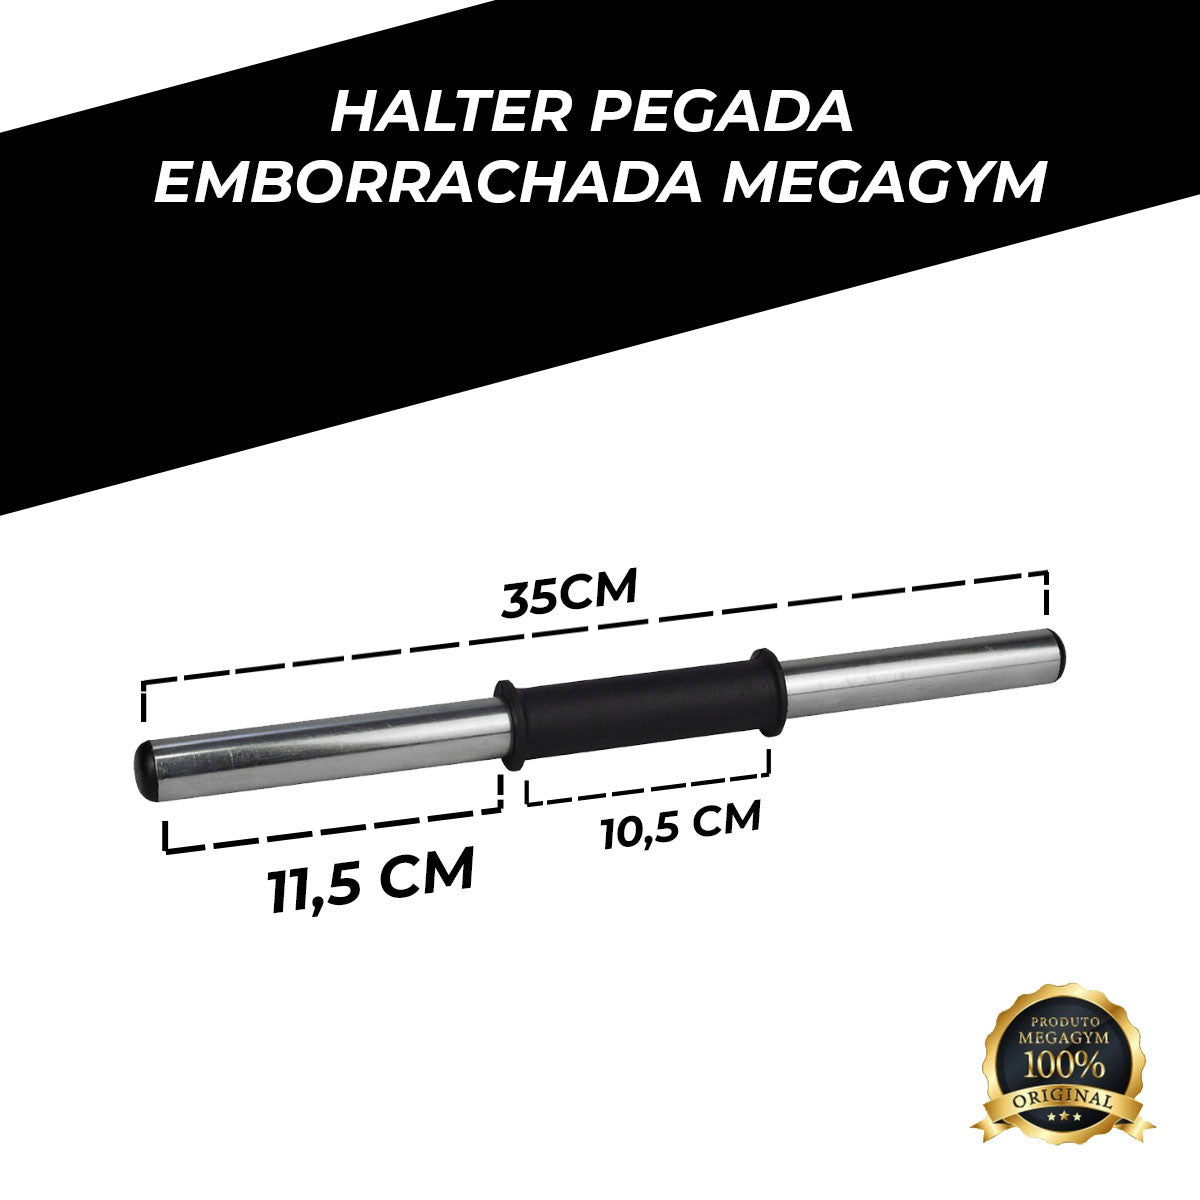 Par Halter Barra Oca Emborrachada 35cm Treino Funcional-MEGAGYM